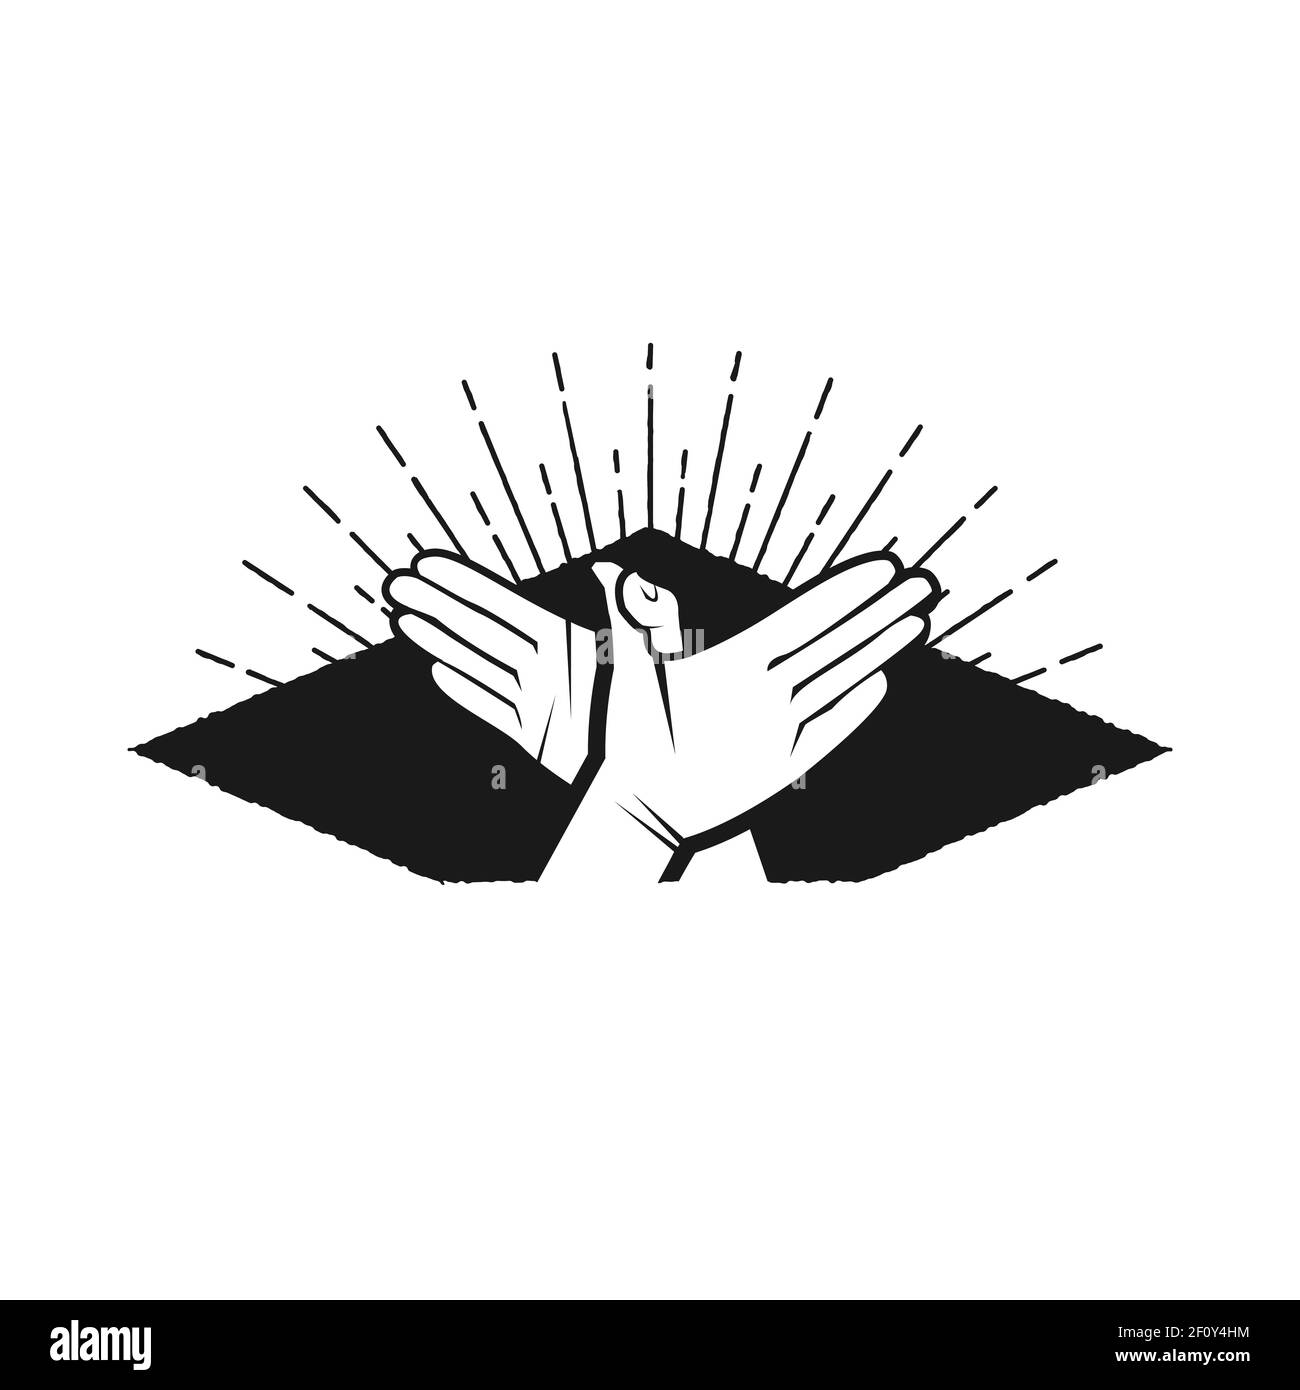 Illustration von zwei Händen zittern in Silhouette Stil. Vektorgrafik EPS,8 EPS,10 Stock Vektor